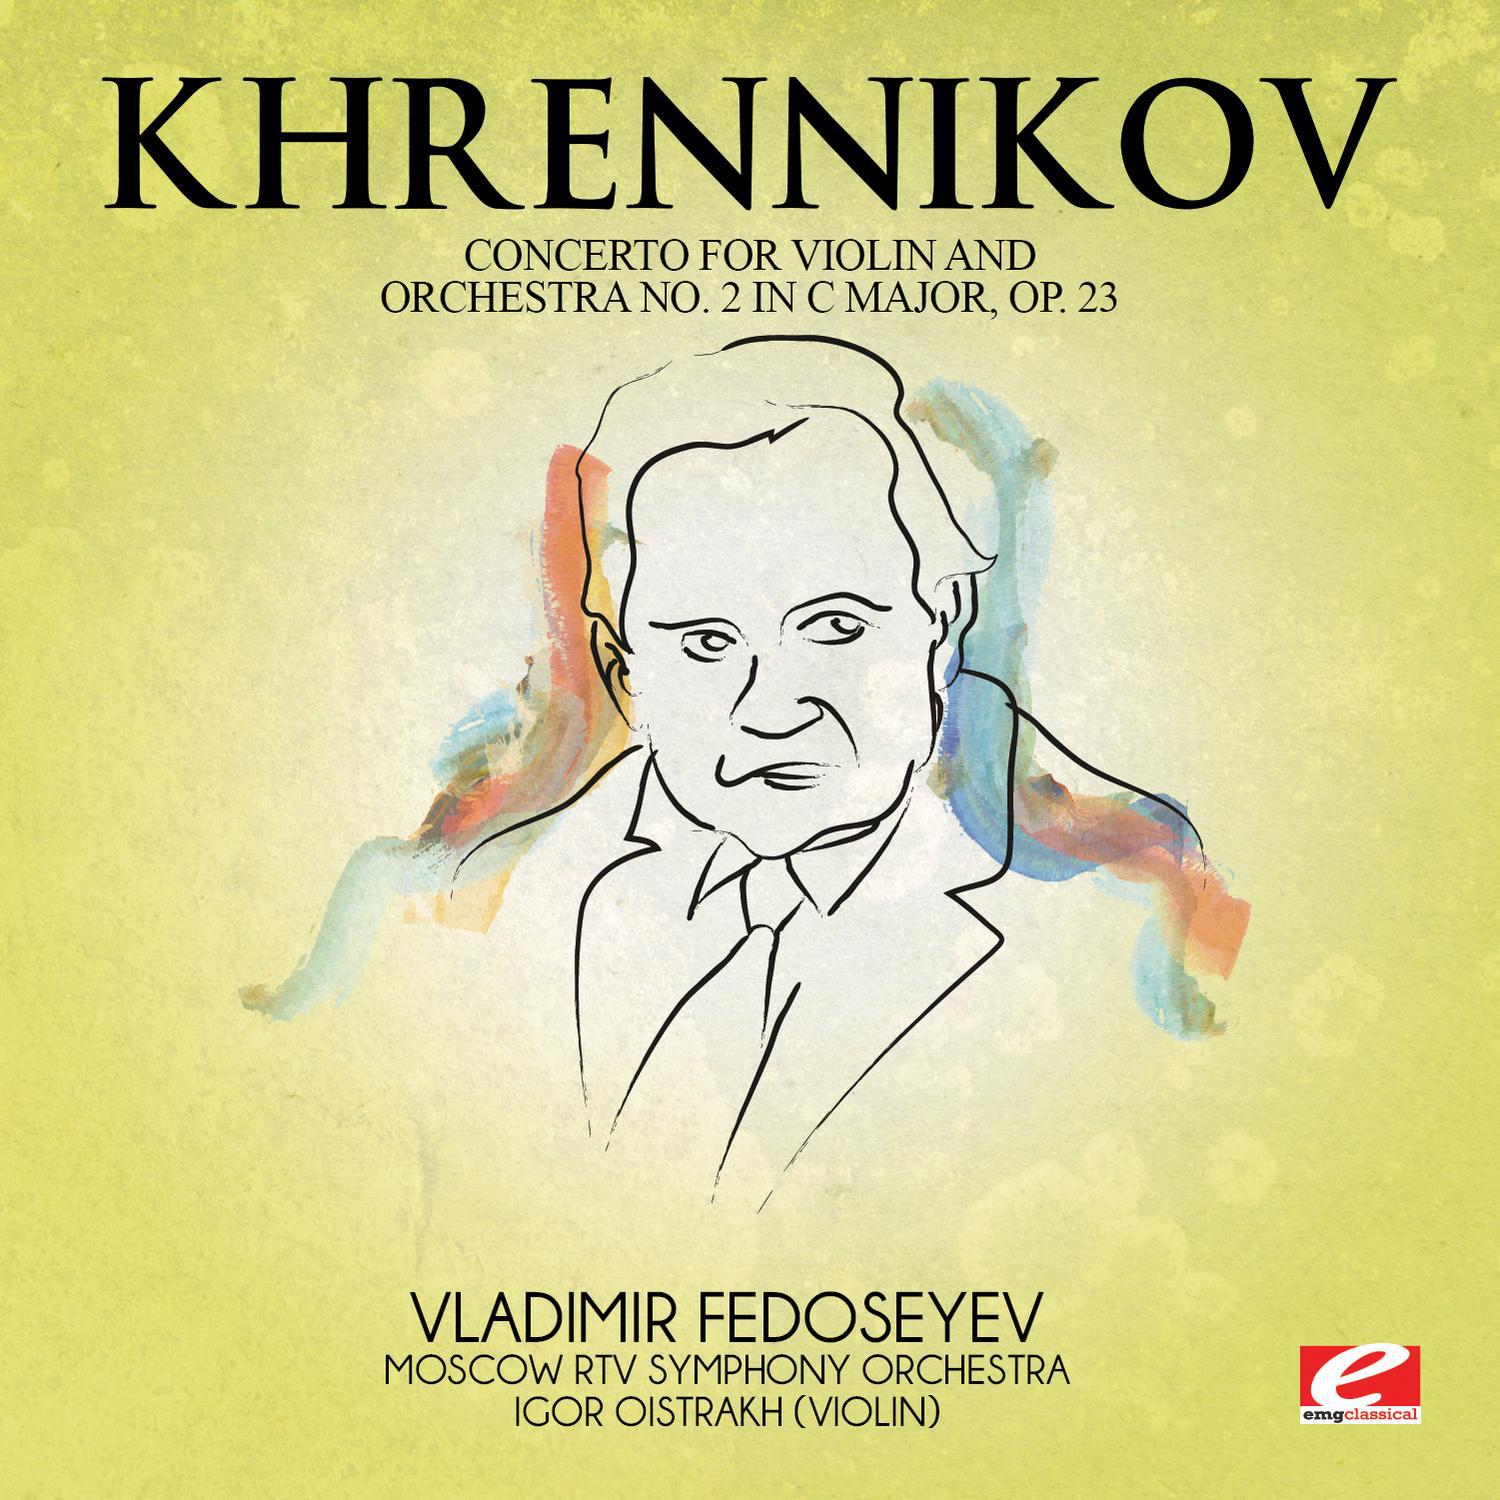 Tikhon Khrennikov - Concerto for Violin and Orchestra No. 2 in C Major, Op. 23: III. Allegro moderato con fuoco